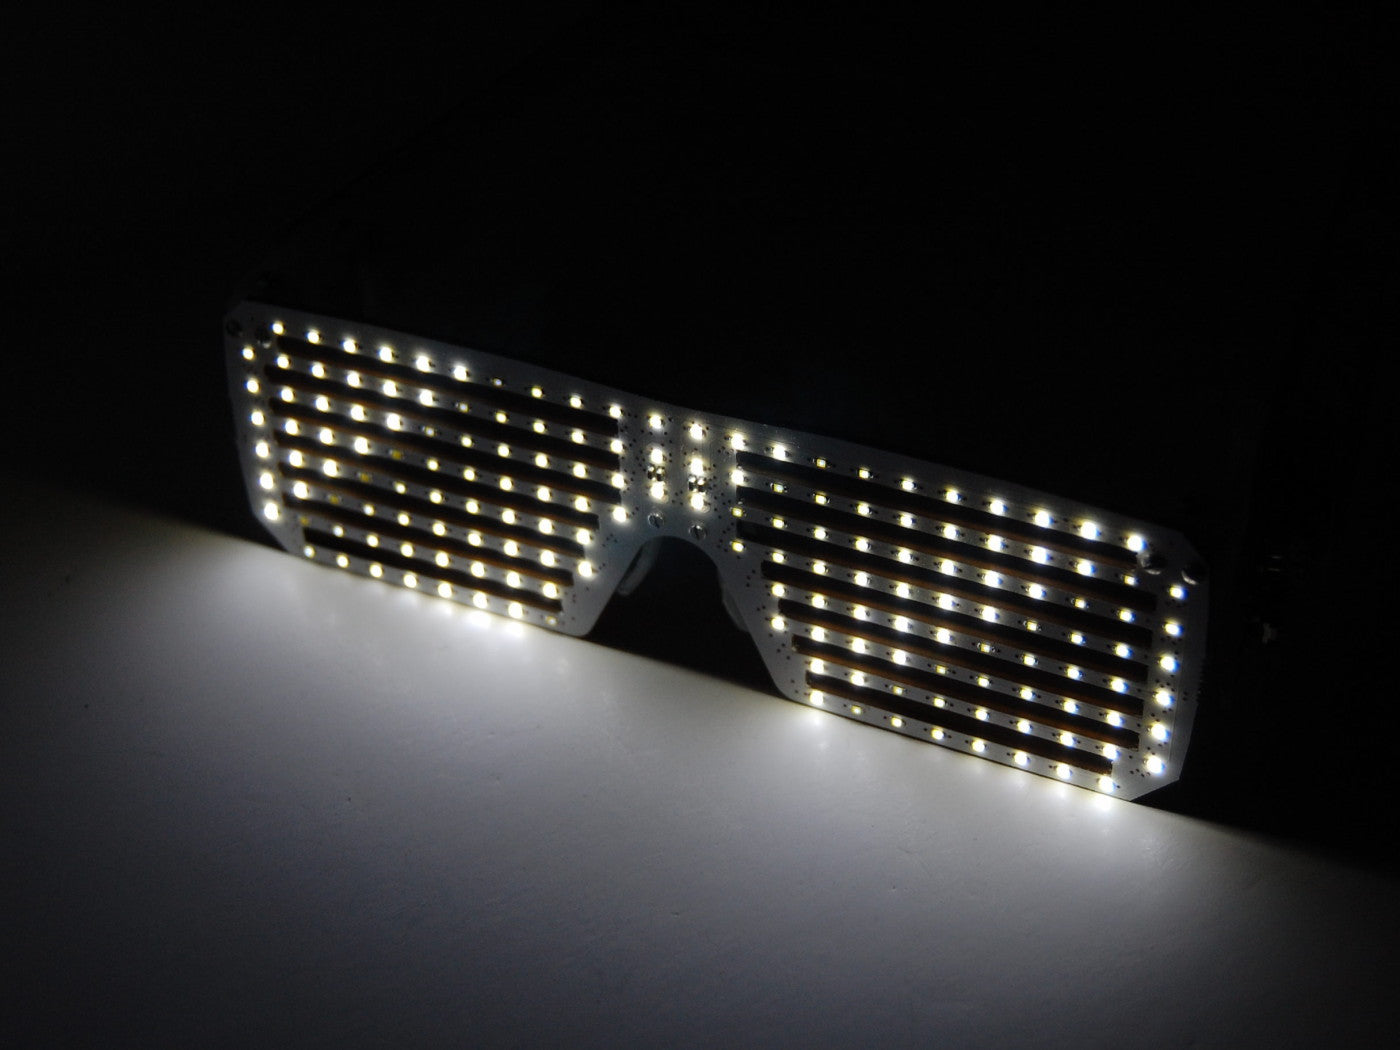 LED Matrix Shades - White